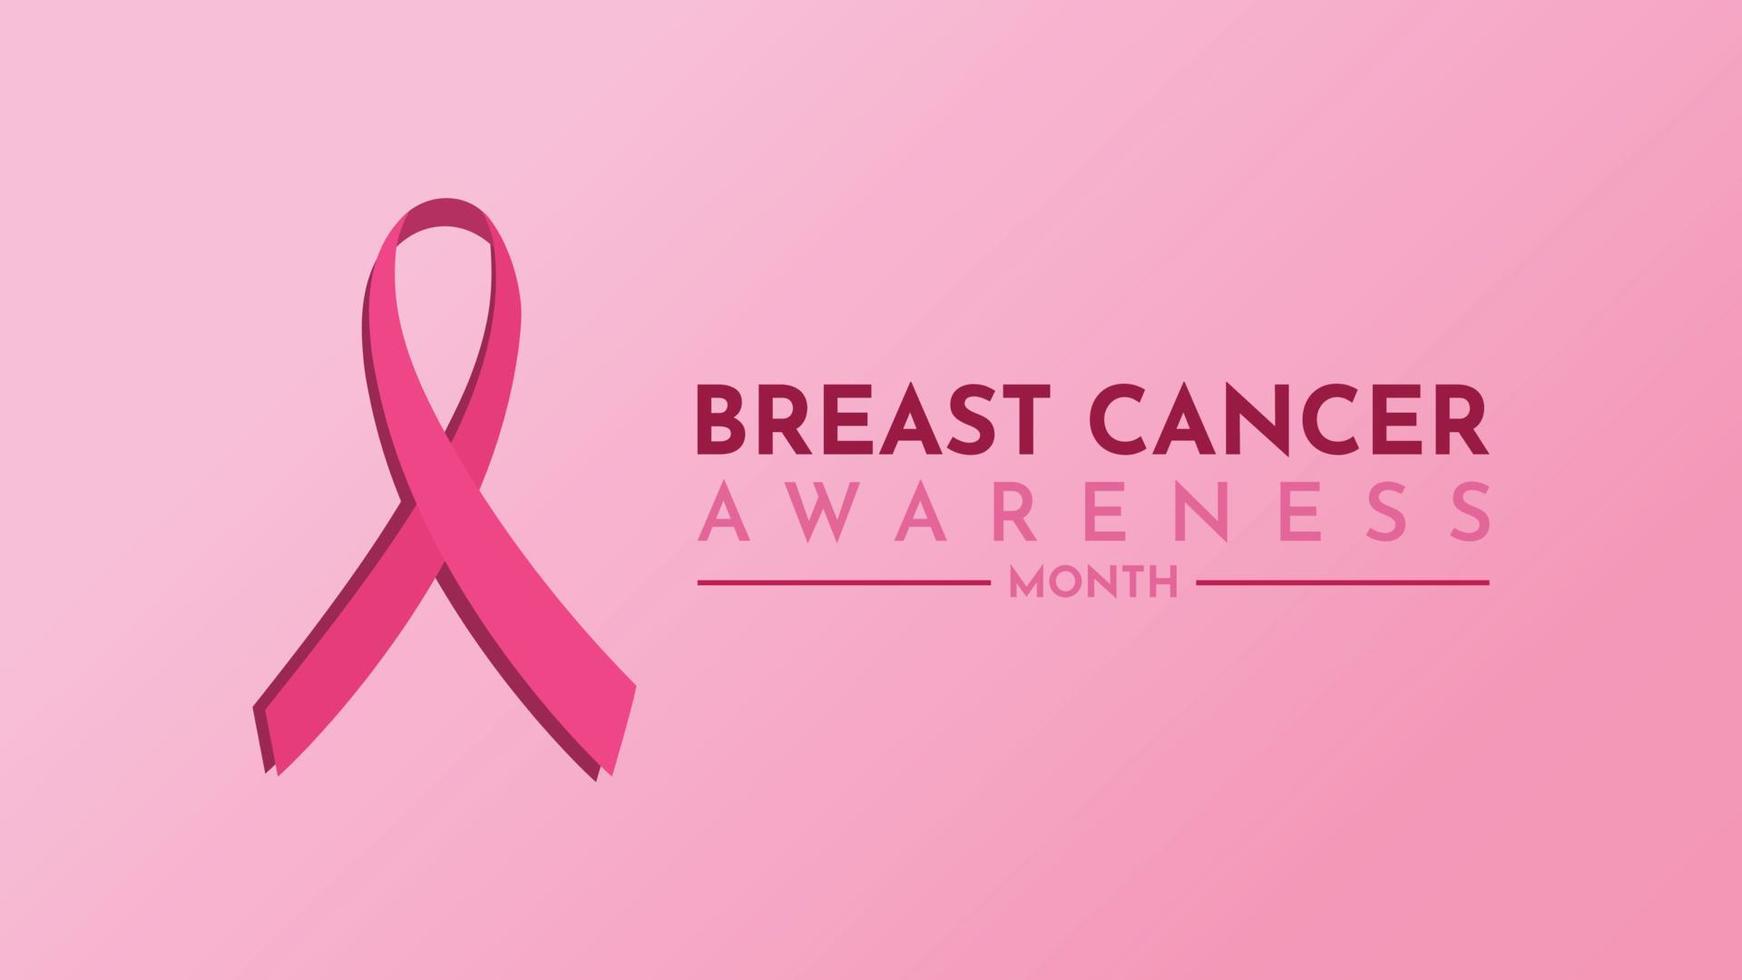 consapevolezza del cancro al seno con carta da parati vettoriale senza nastro